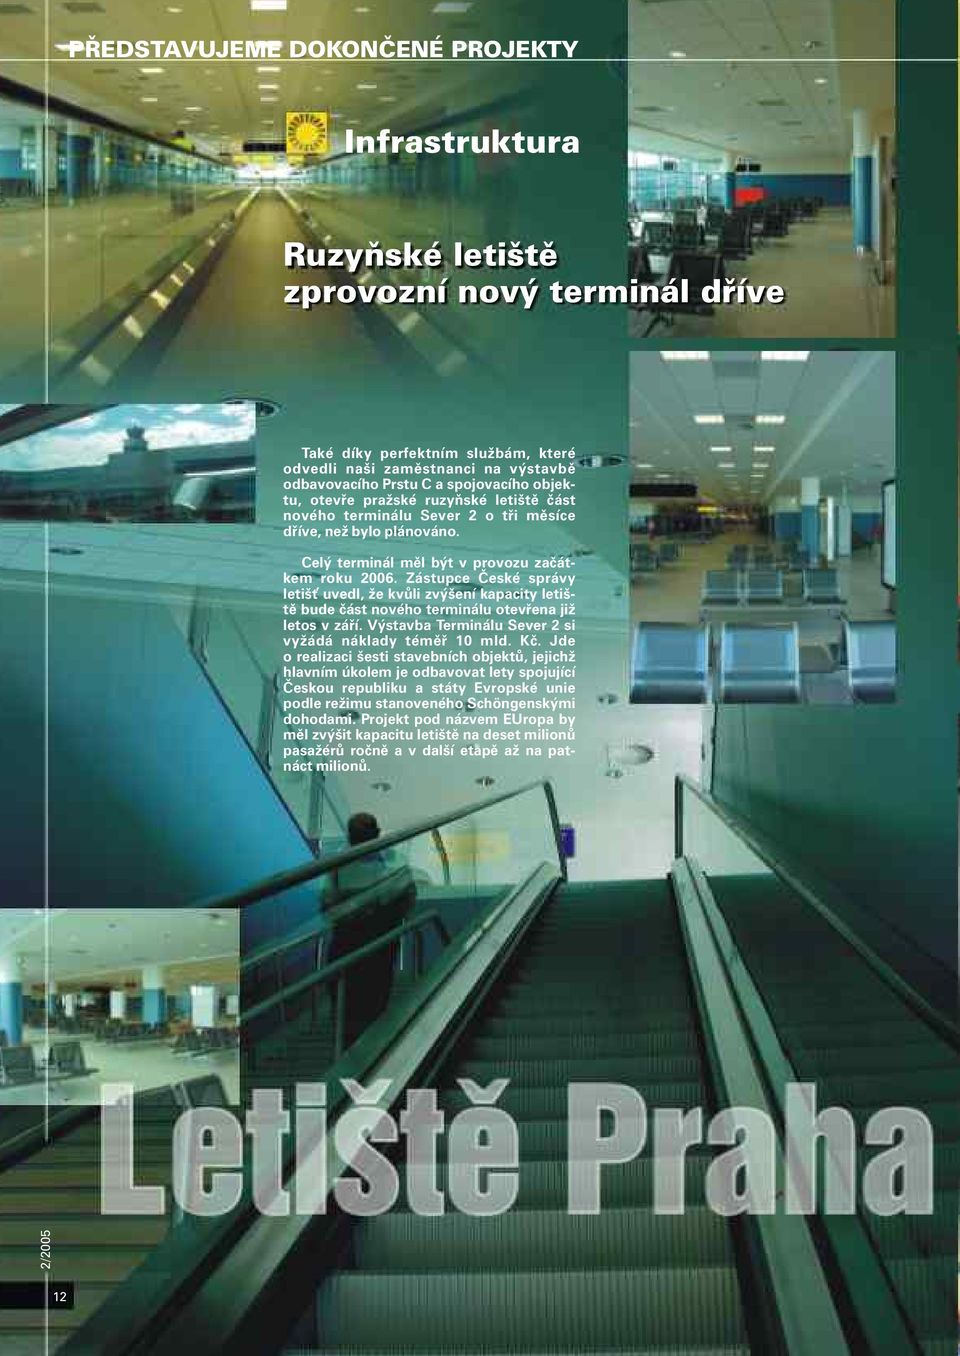 Zástupce České správy letišť uvedl, že kvůli zvýšení kapacity letiště bude část nového terminálu otevřena již letos v září. Výstavba Terminálu Sever 2 si vyžádá náklady téměř 10 mld. Kč.